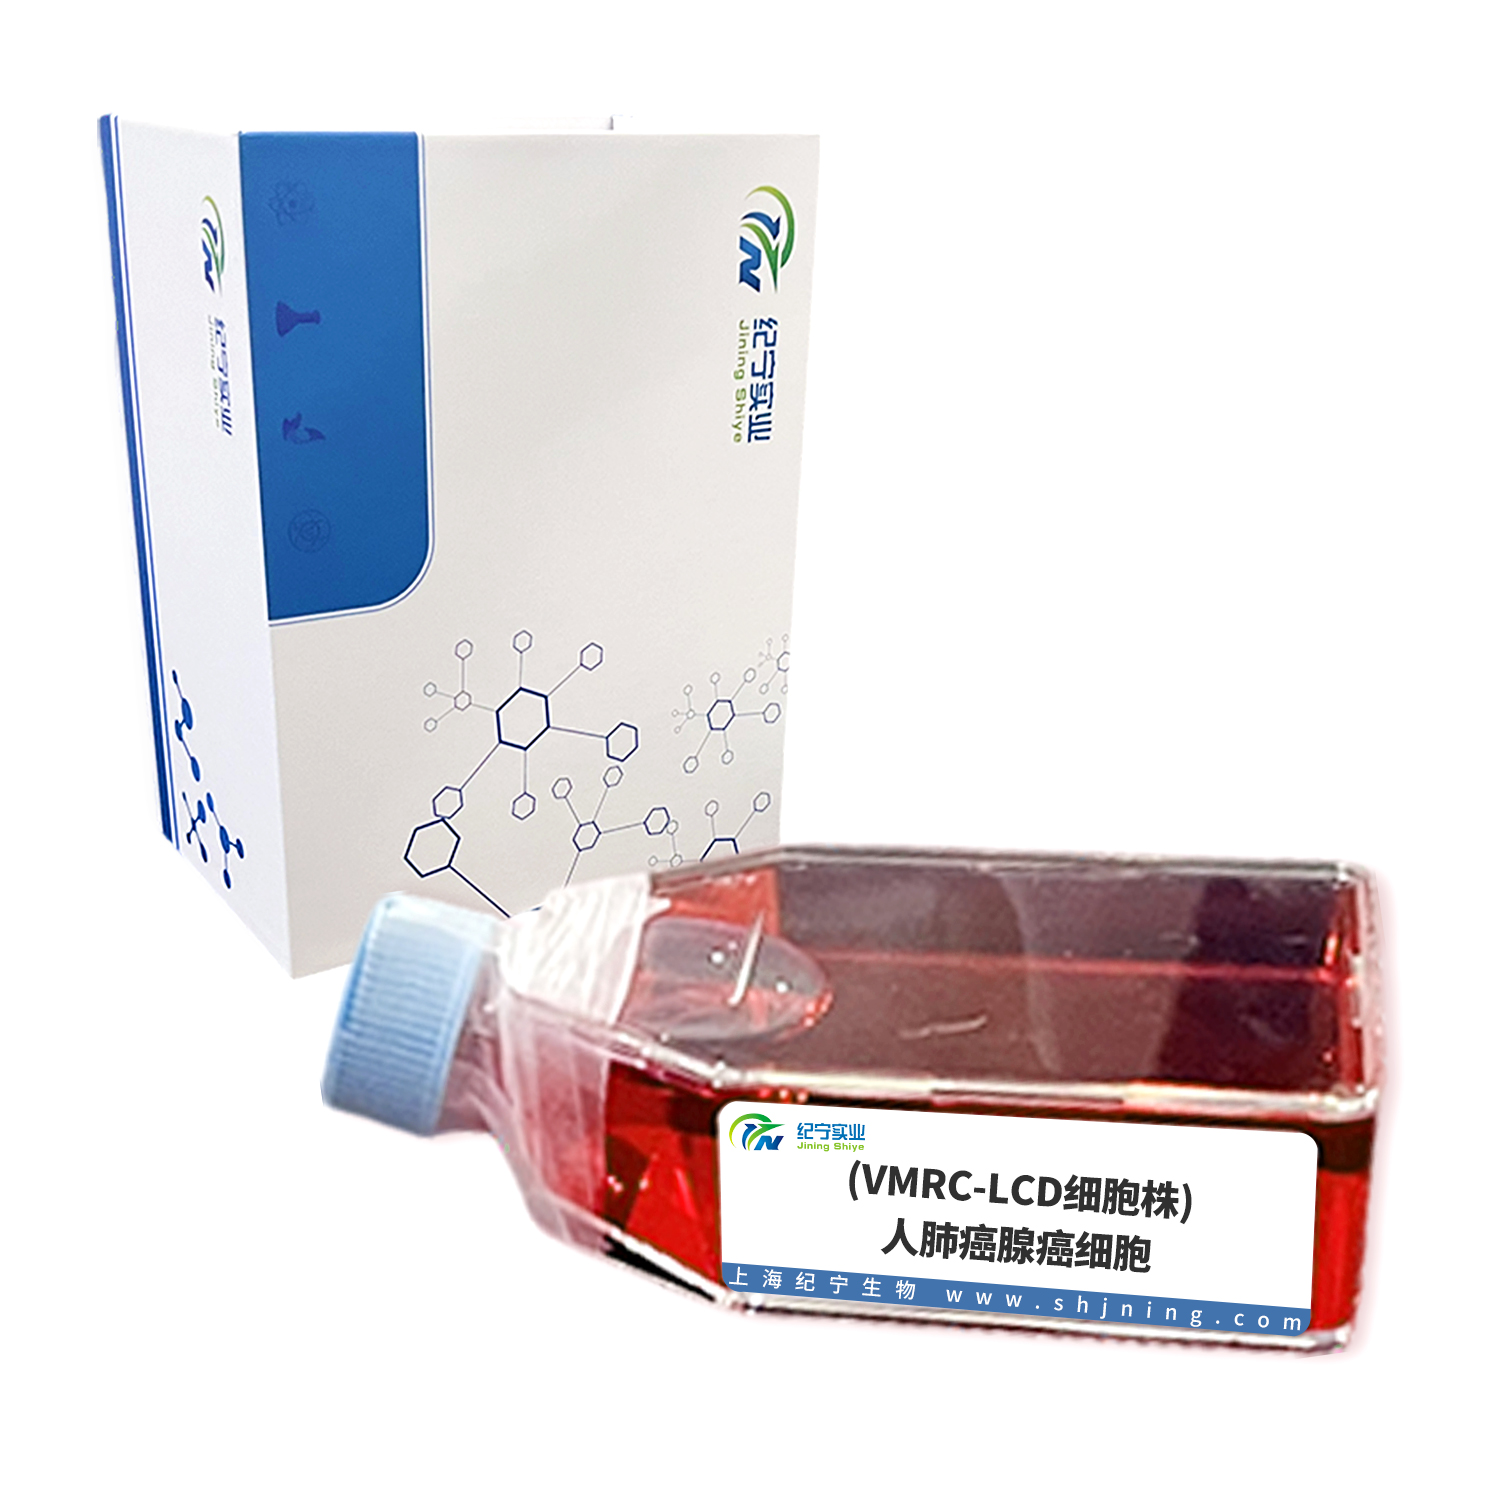 (VMRC-LCD细胞株)人肺癌腺癌细胞